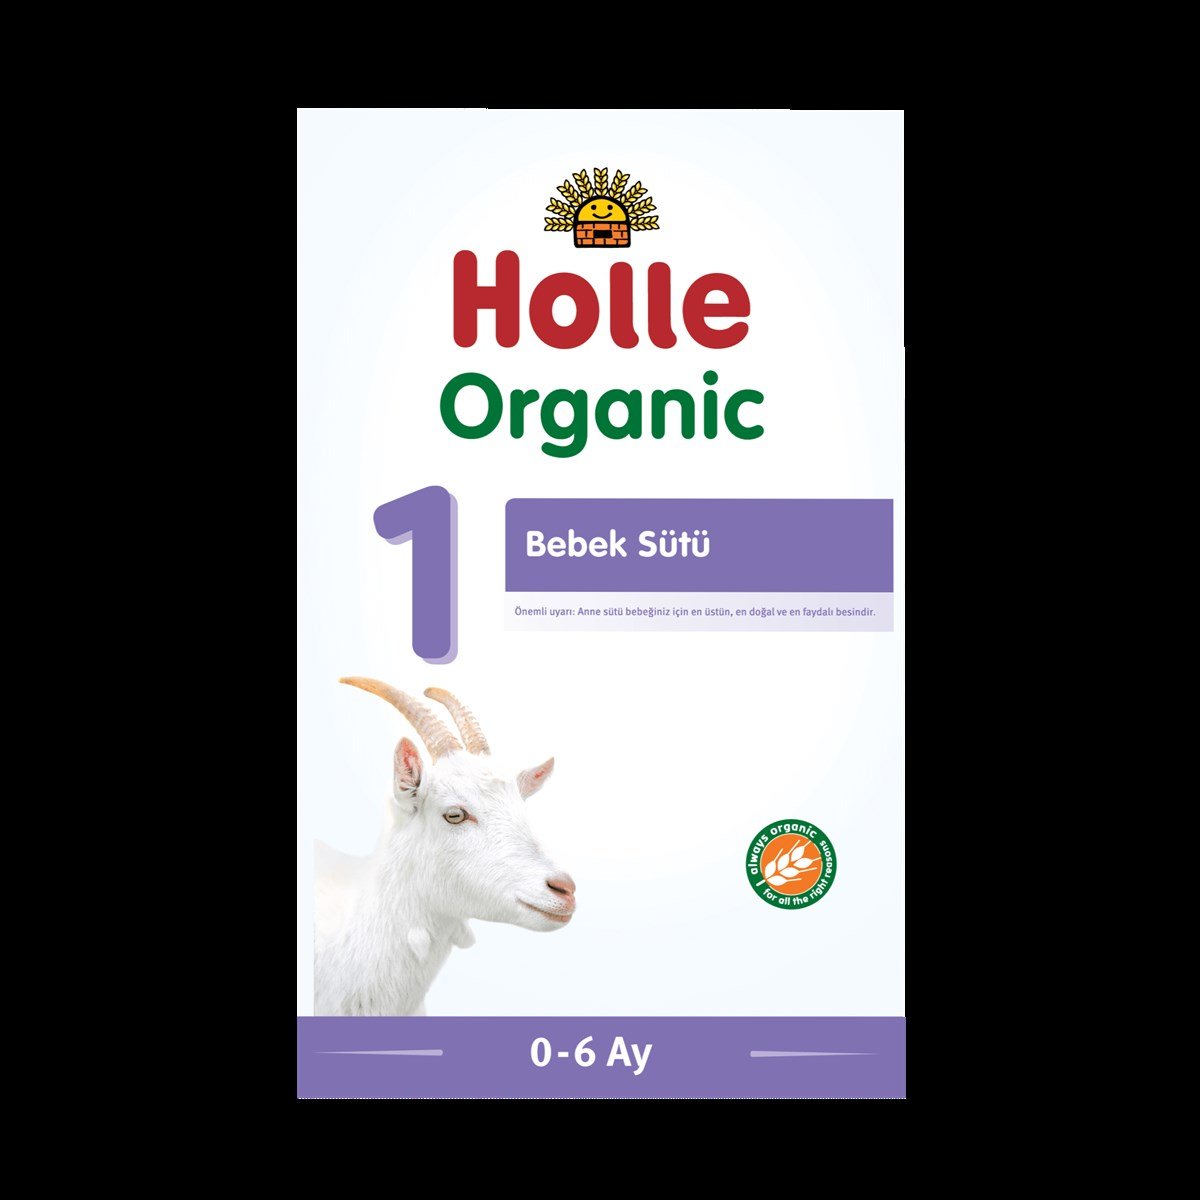 Holle 1 Organik Keçi Bebek Sütü | orjinal ürün garantisi ve aynı gün kargo  ile mamanevar.com'da